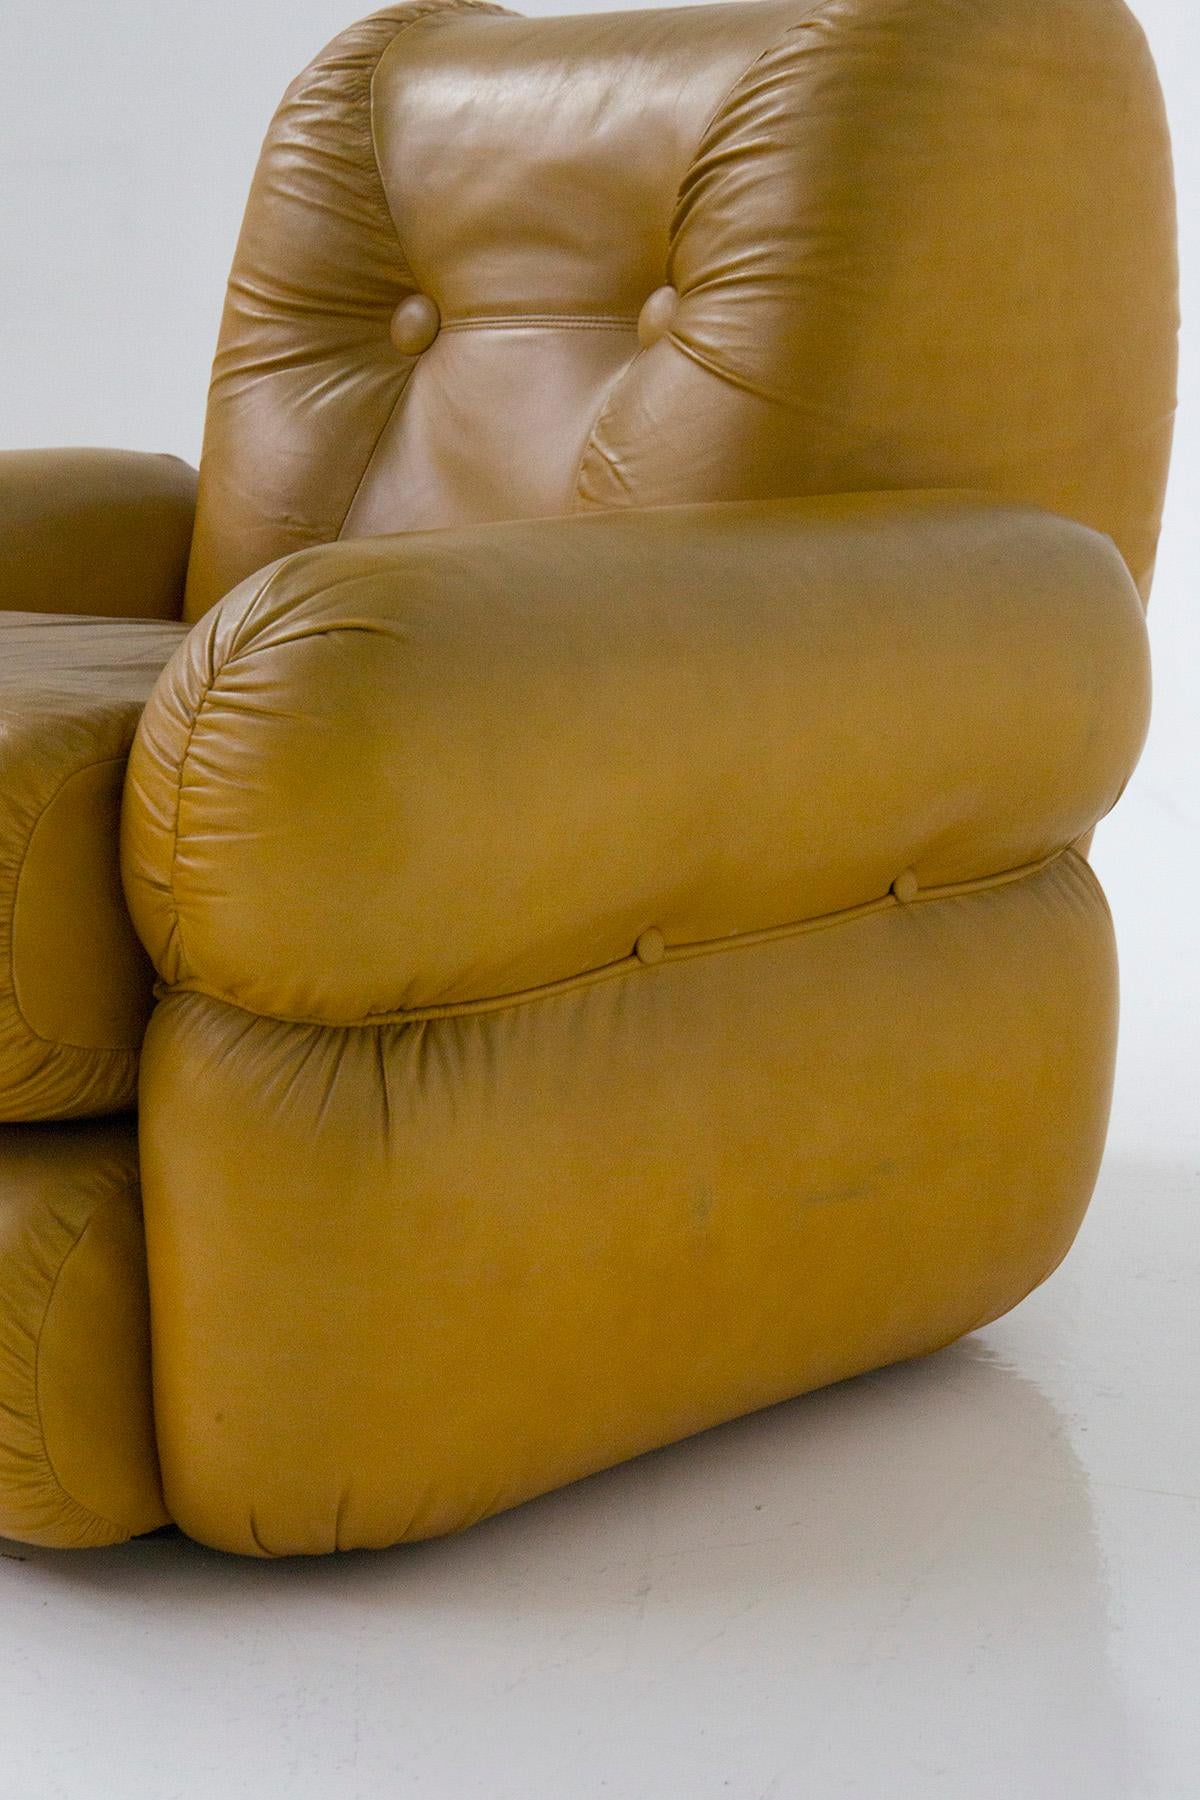 Ère spatiale Paire de fauteuils italiens vintage en cuir dans le style de l'ère spatiale des années 70